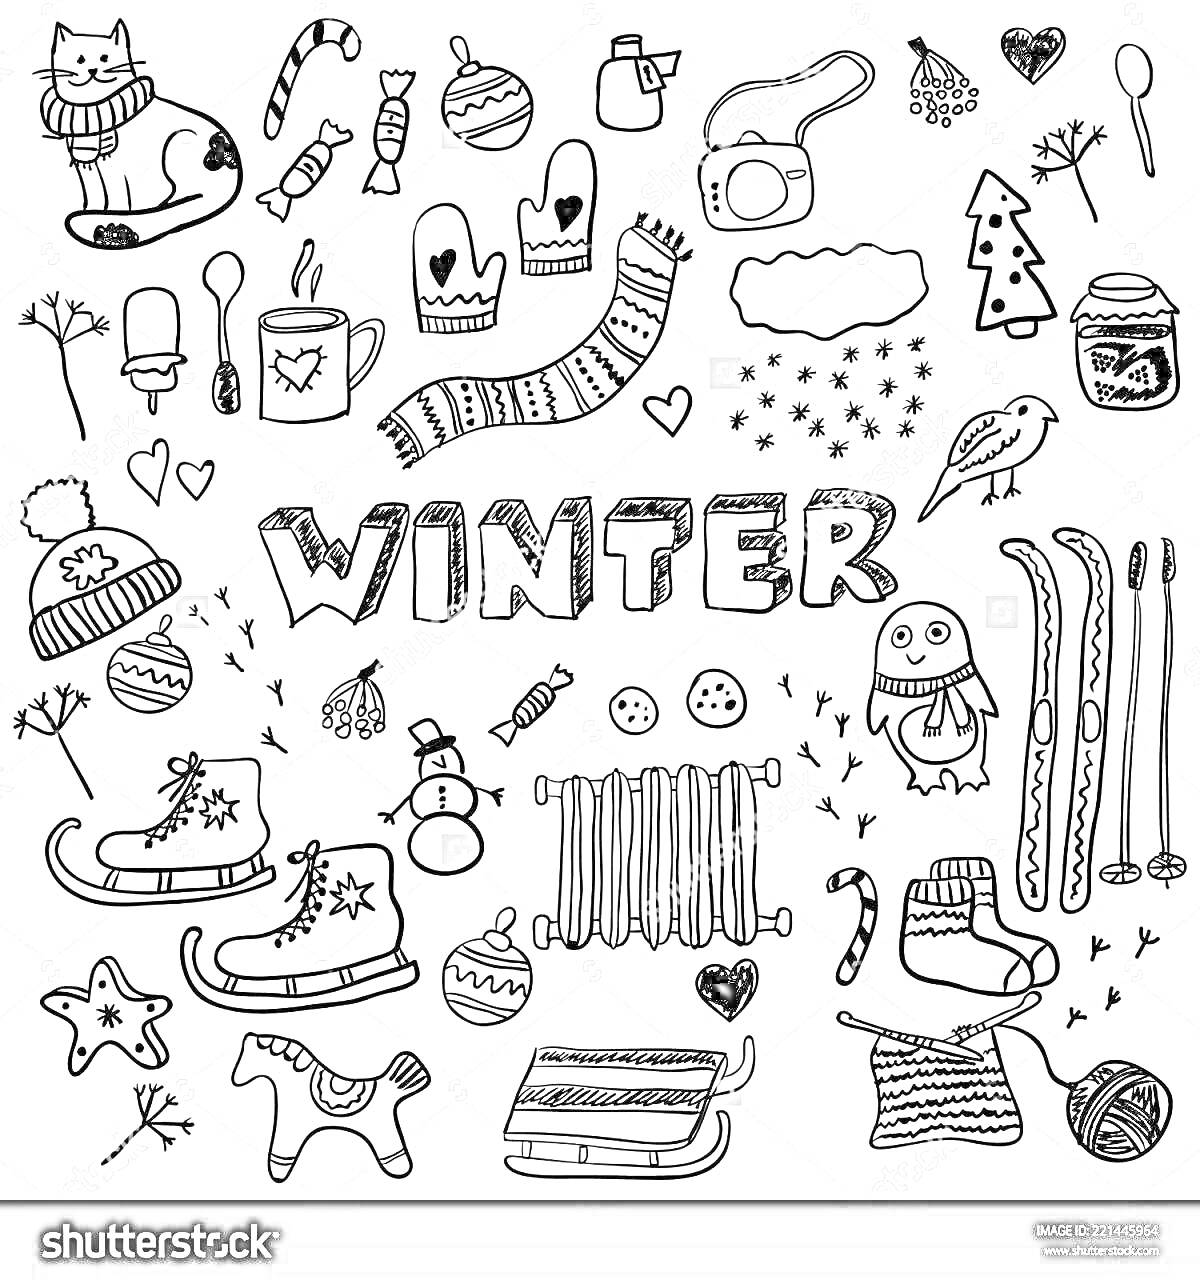 Цветная раскраска наклеек для ежедневника с зимней тематикой. Элементы включают надпись 